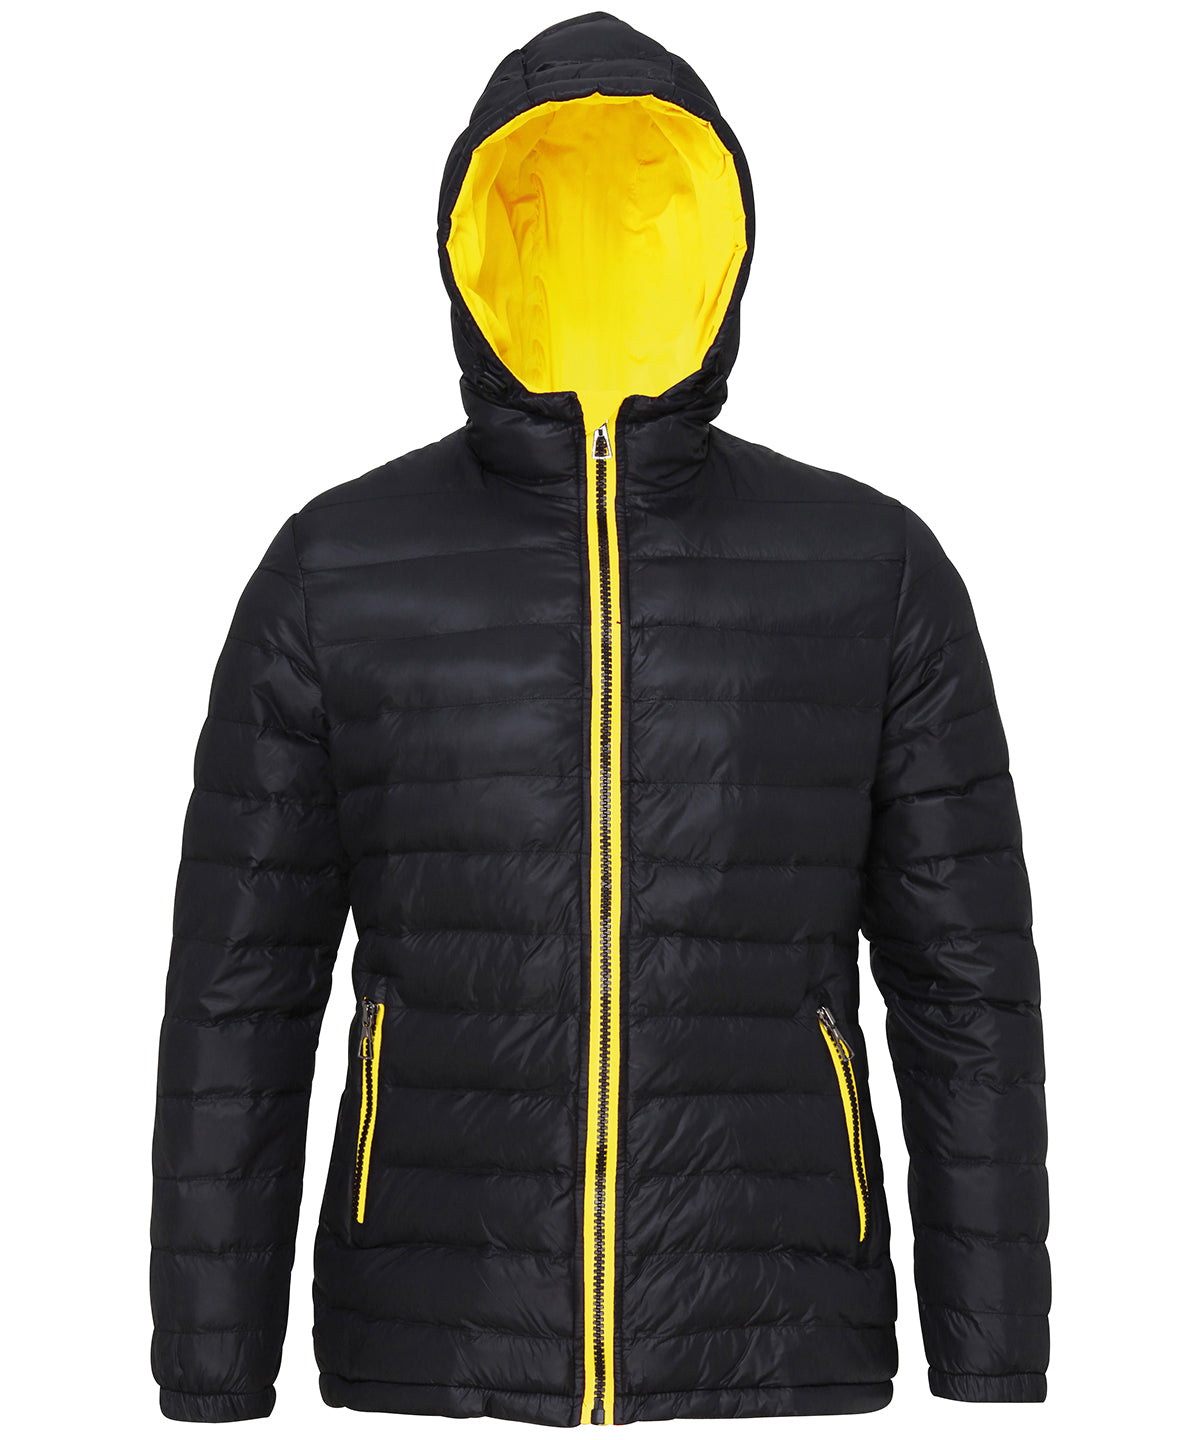 Personalised Jackets - Black 2786 Women's padded jacket